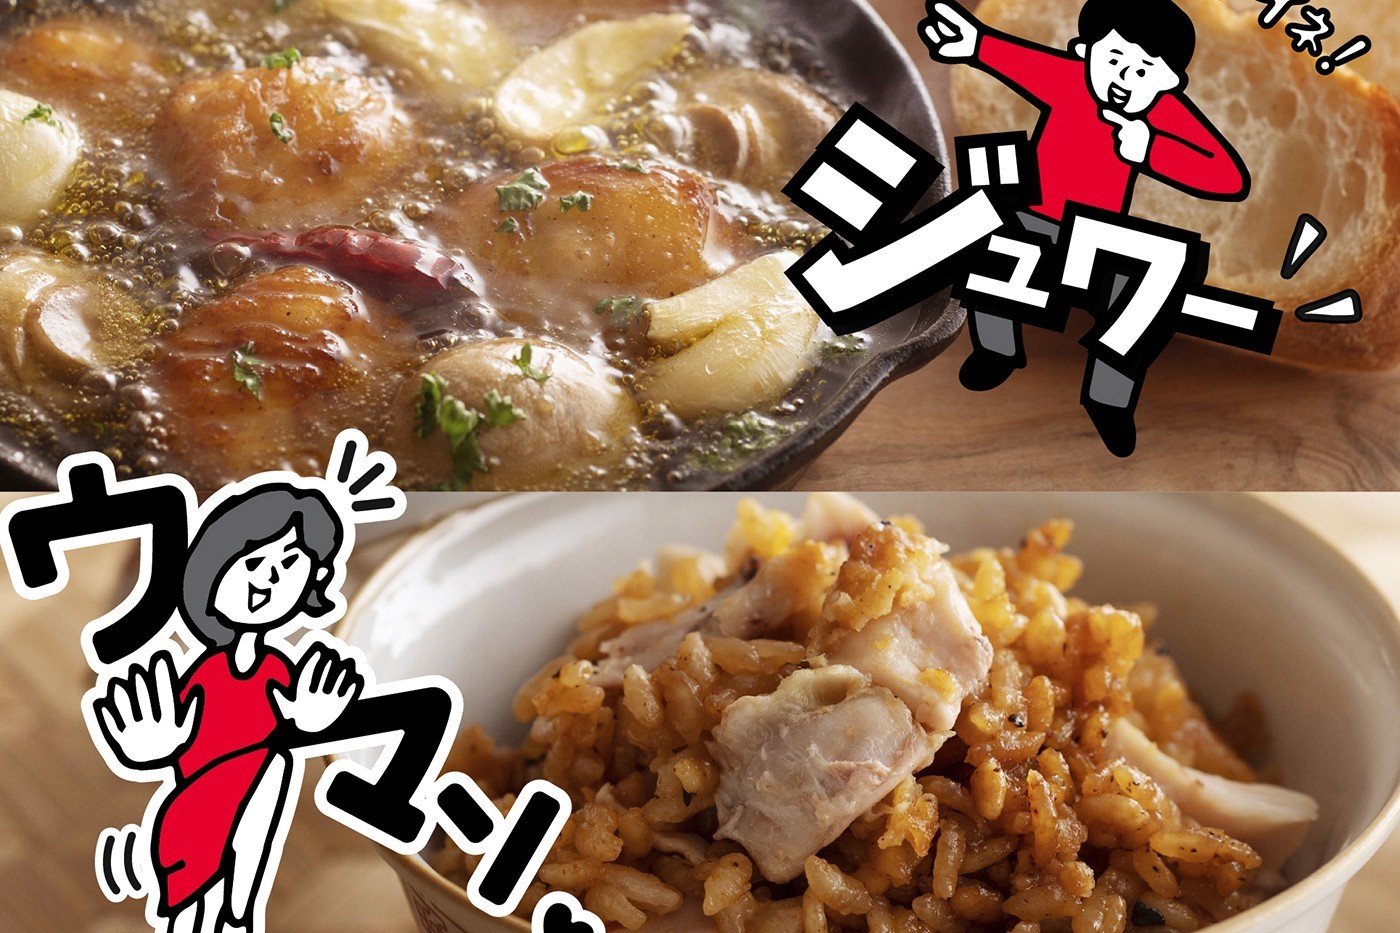 日本 KFC 发布全新「浓白鸡骨高汤蕎麦面」、「大蒜油煎炒鸡」等独家食谱